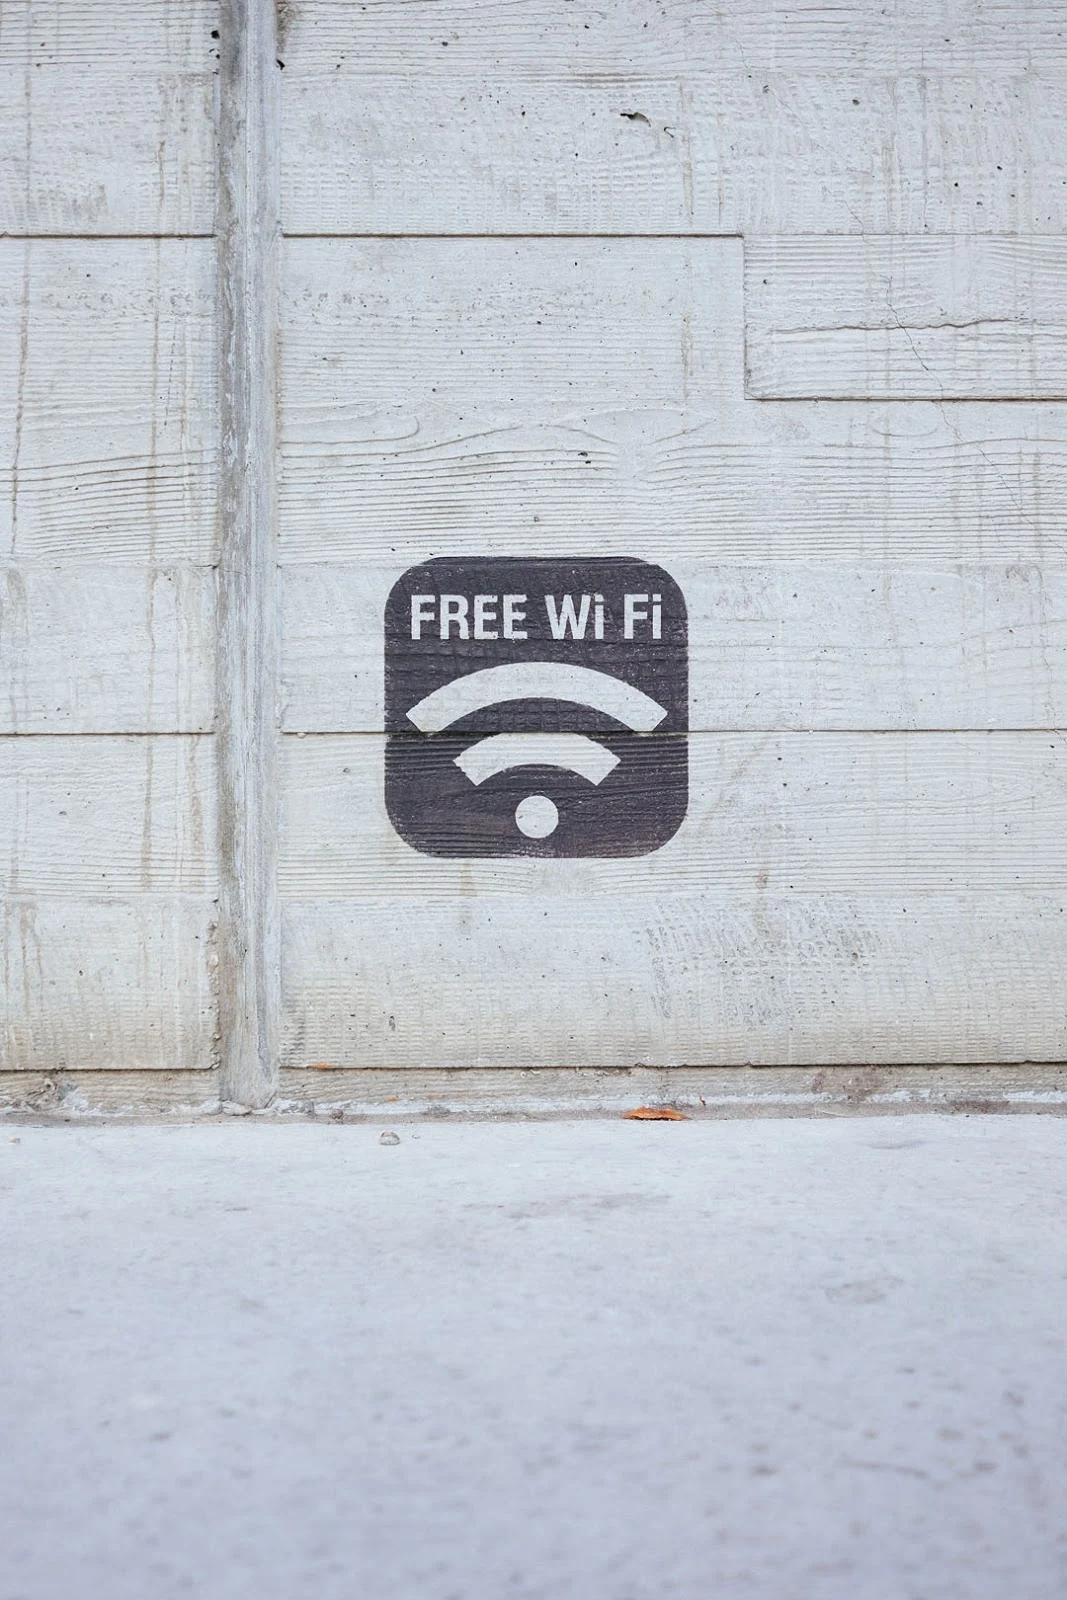 Guna servis Wifi internet percuma semasa percutian